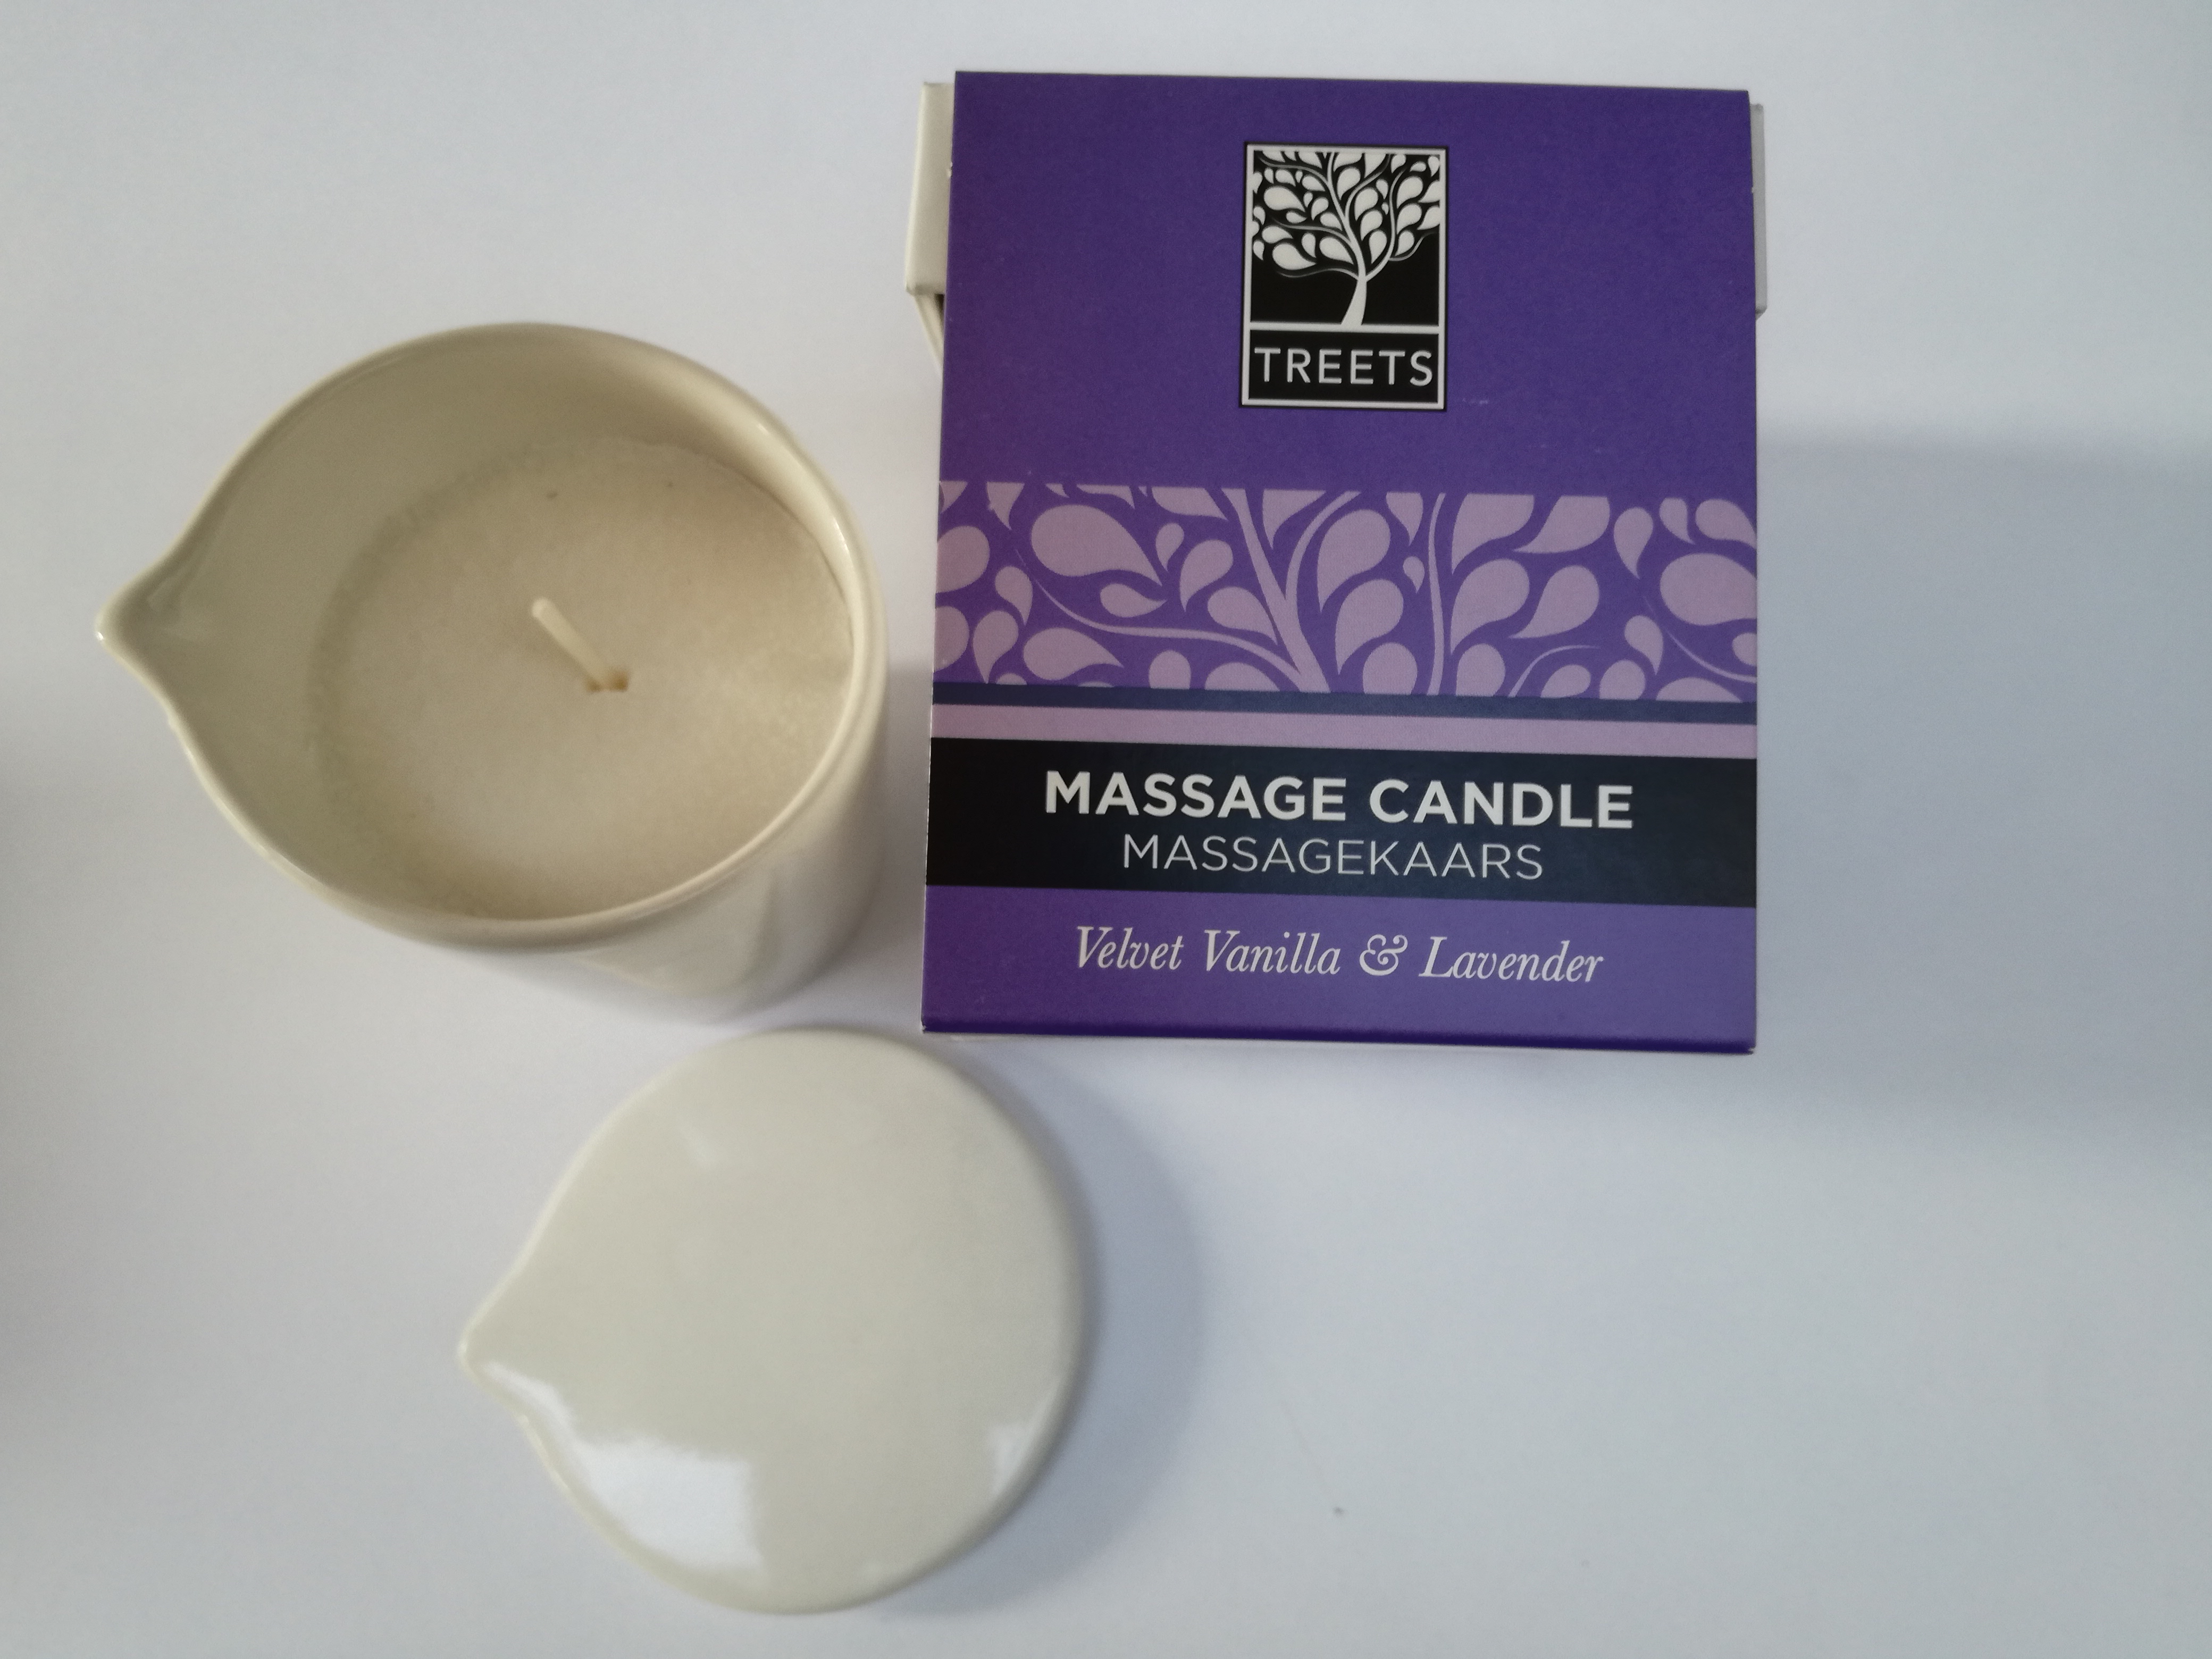 Onderwijs Aandringen Tijd Massagekaars van sheaboter met een geur van vanille en lavendel